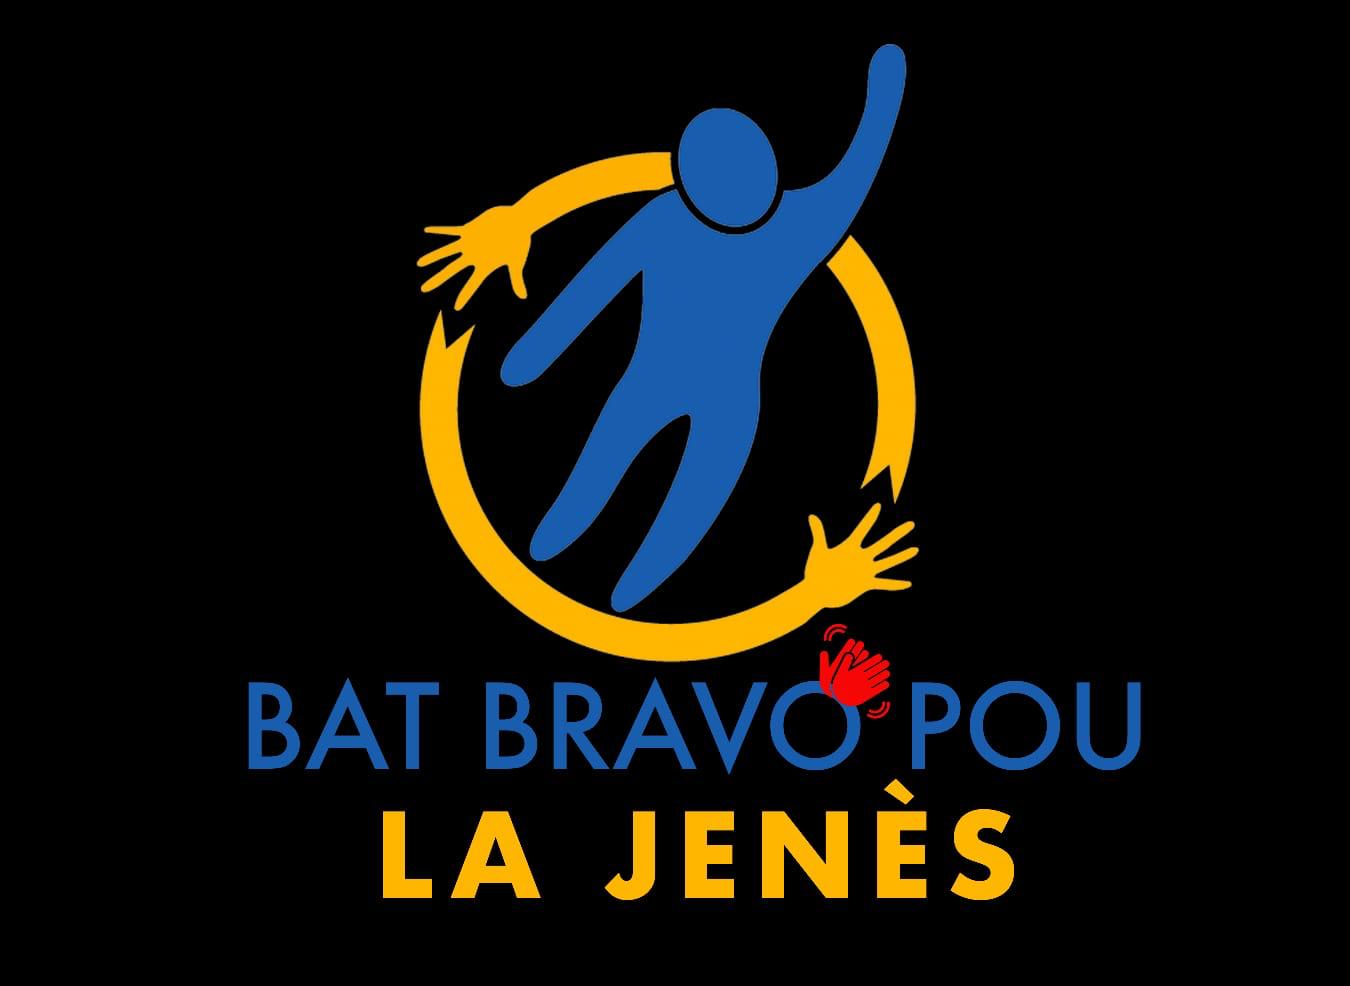 Présentation du mouvement" Bat bravo pou lajenès" et ses objectifs